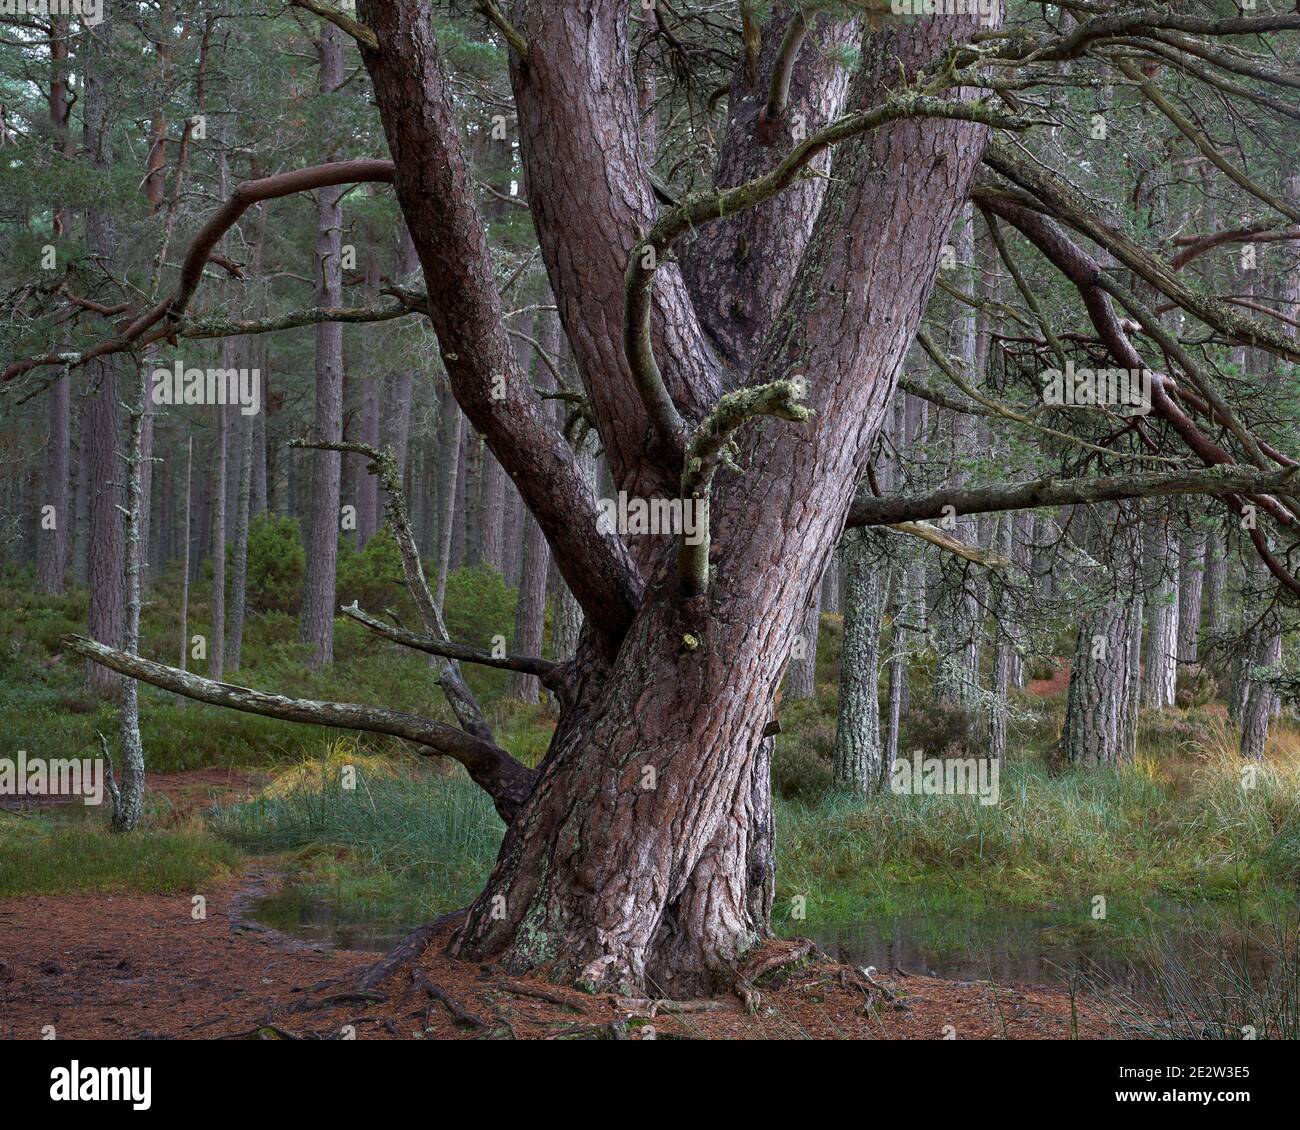 Scots Pine tree near Loch Garten, Badenoch and Strathspey, Highland, Scotland. Stock Photo